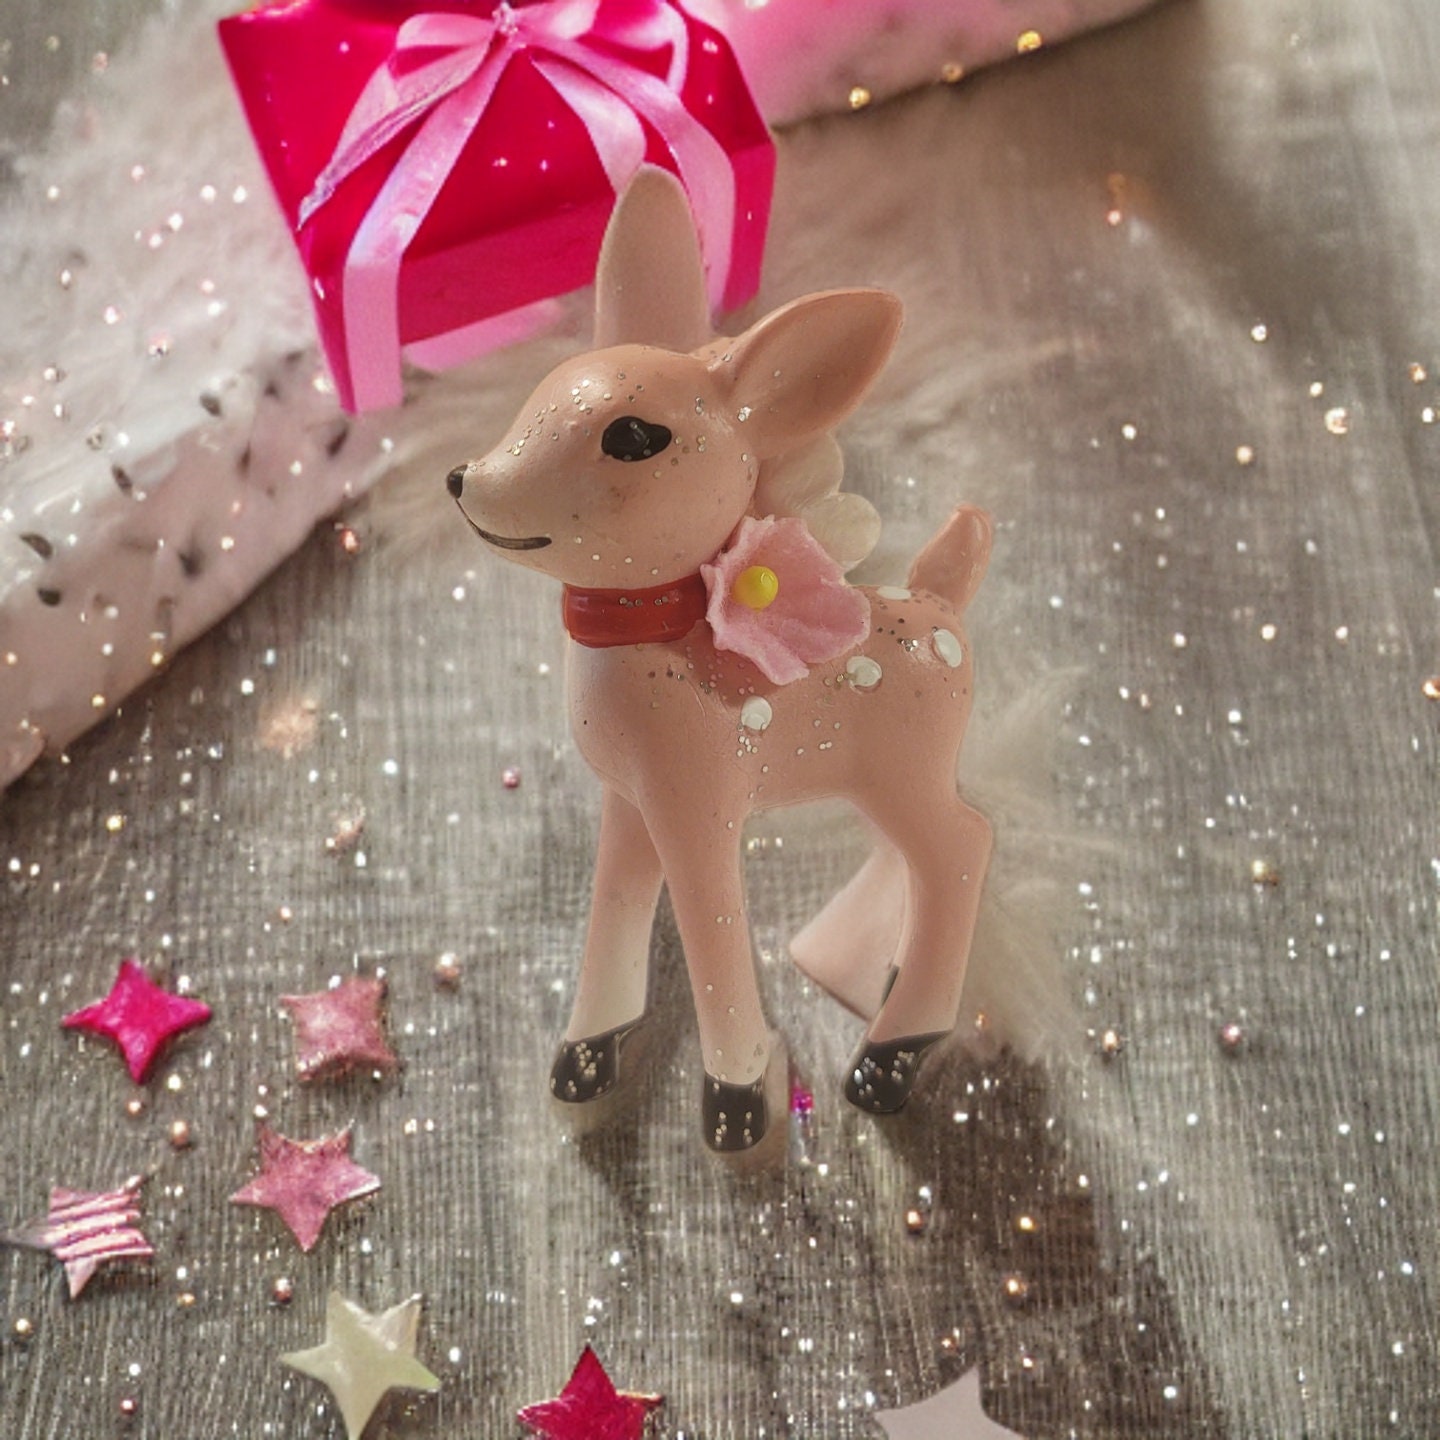 Vintage Crockpot Ornament – Pink Antlers